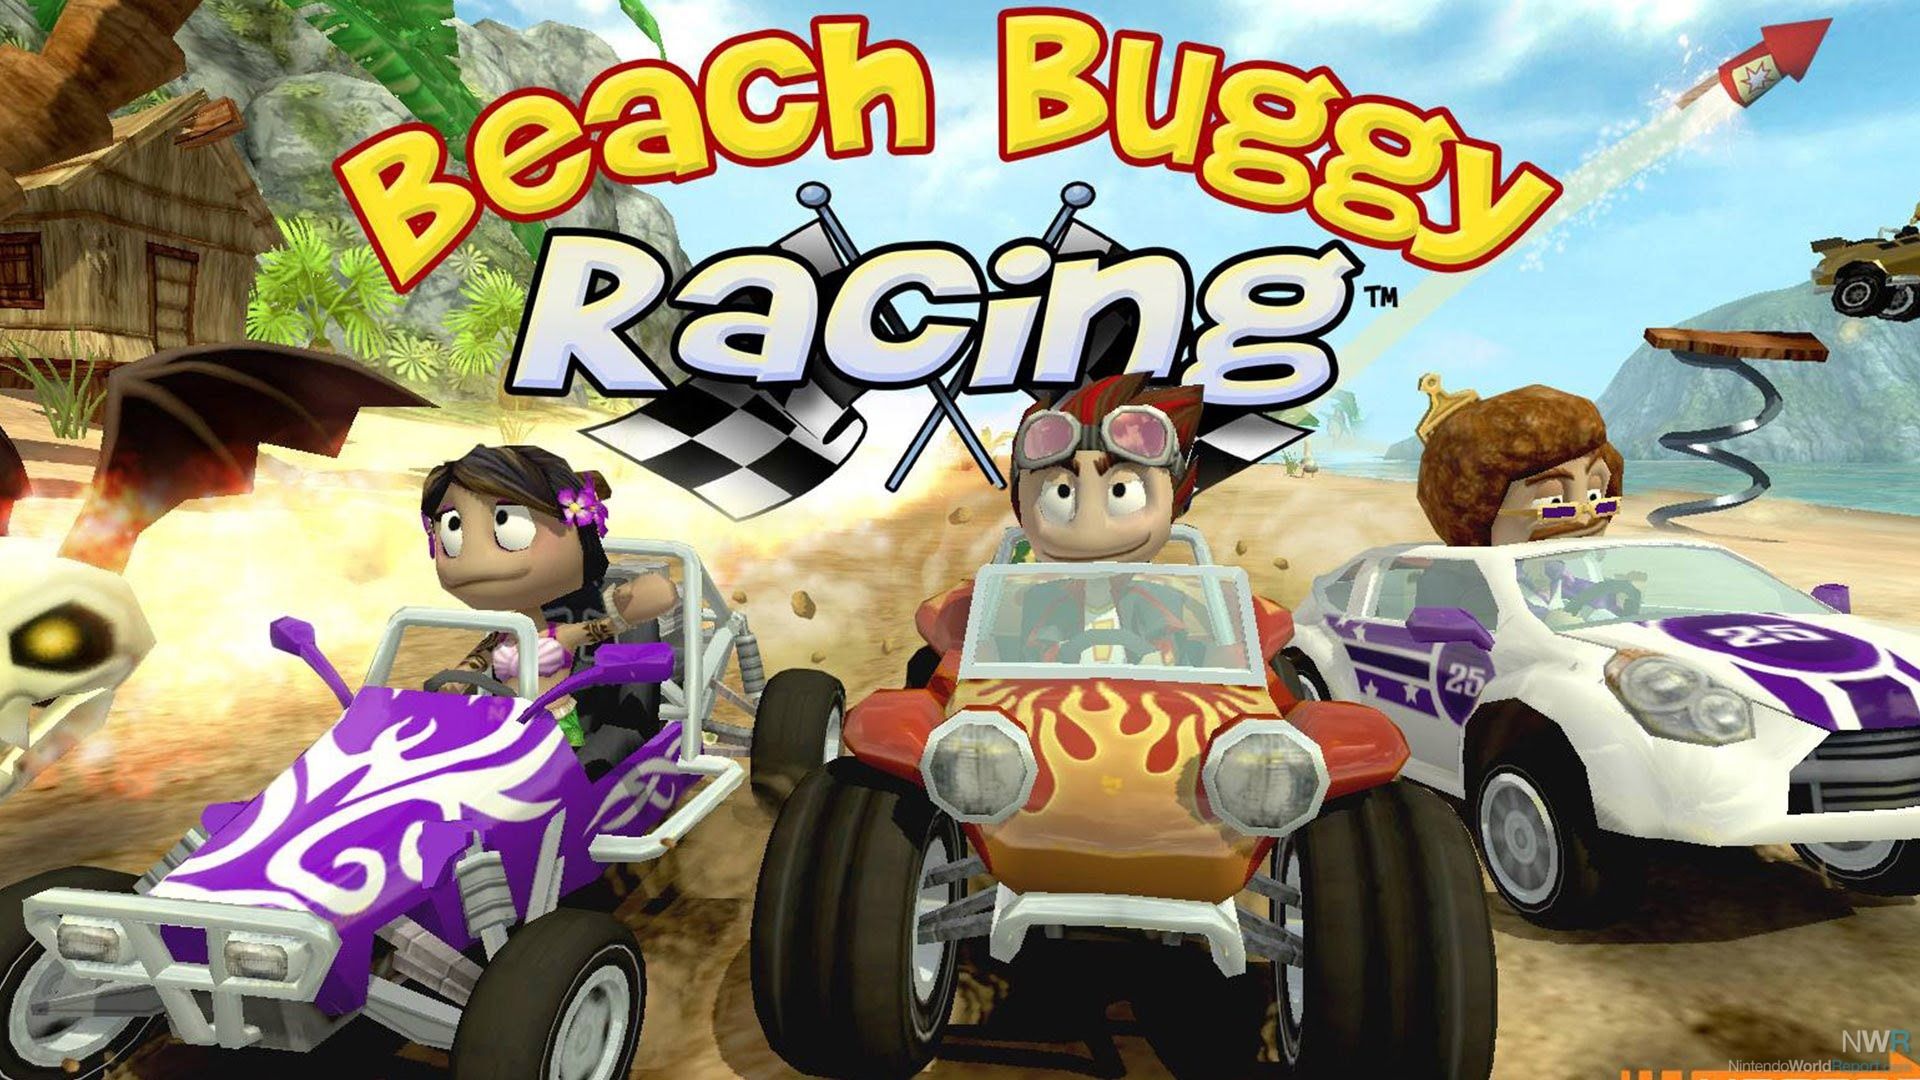 descargar beach buggy racing 2 hackeado para pc